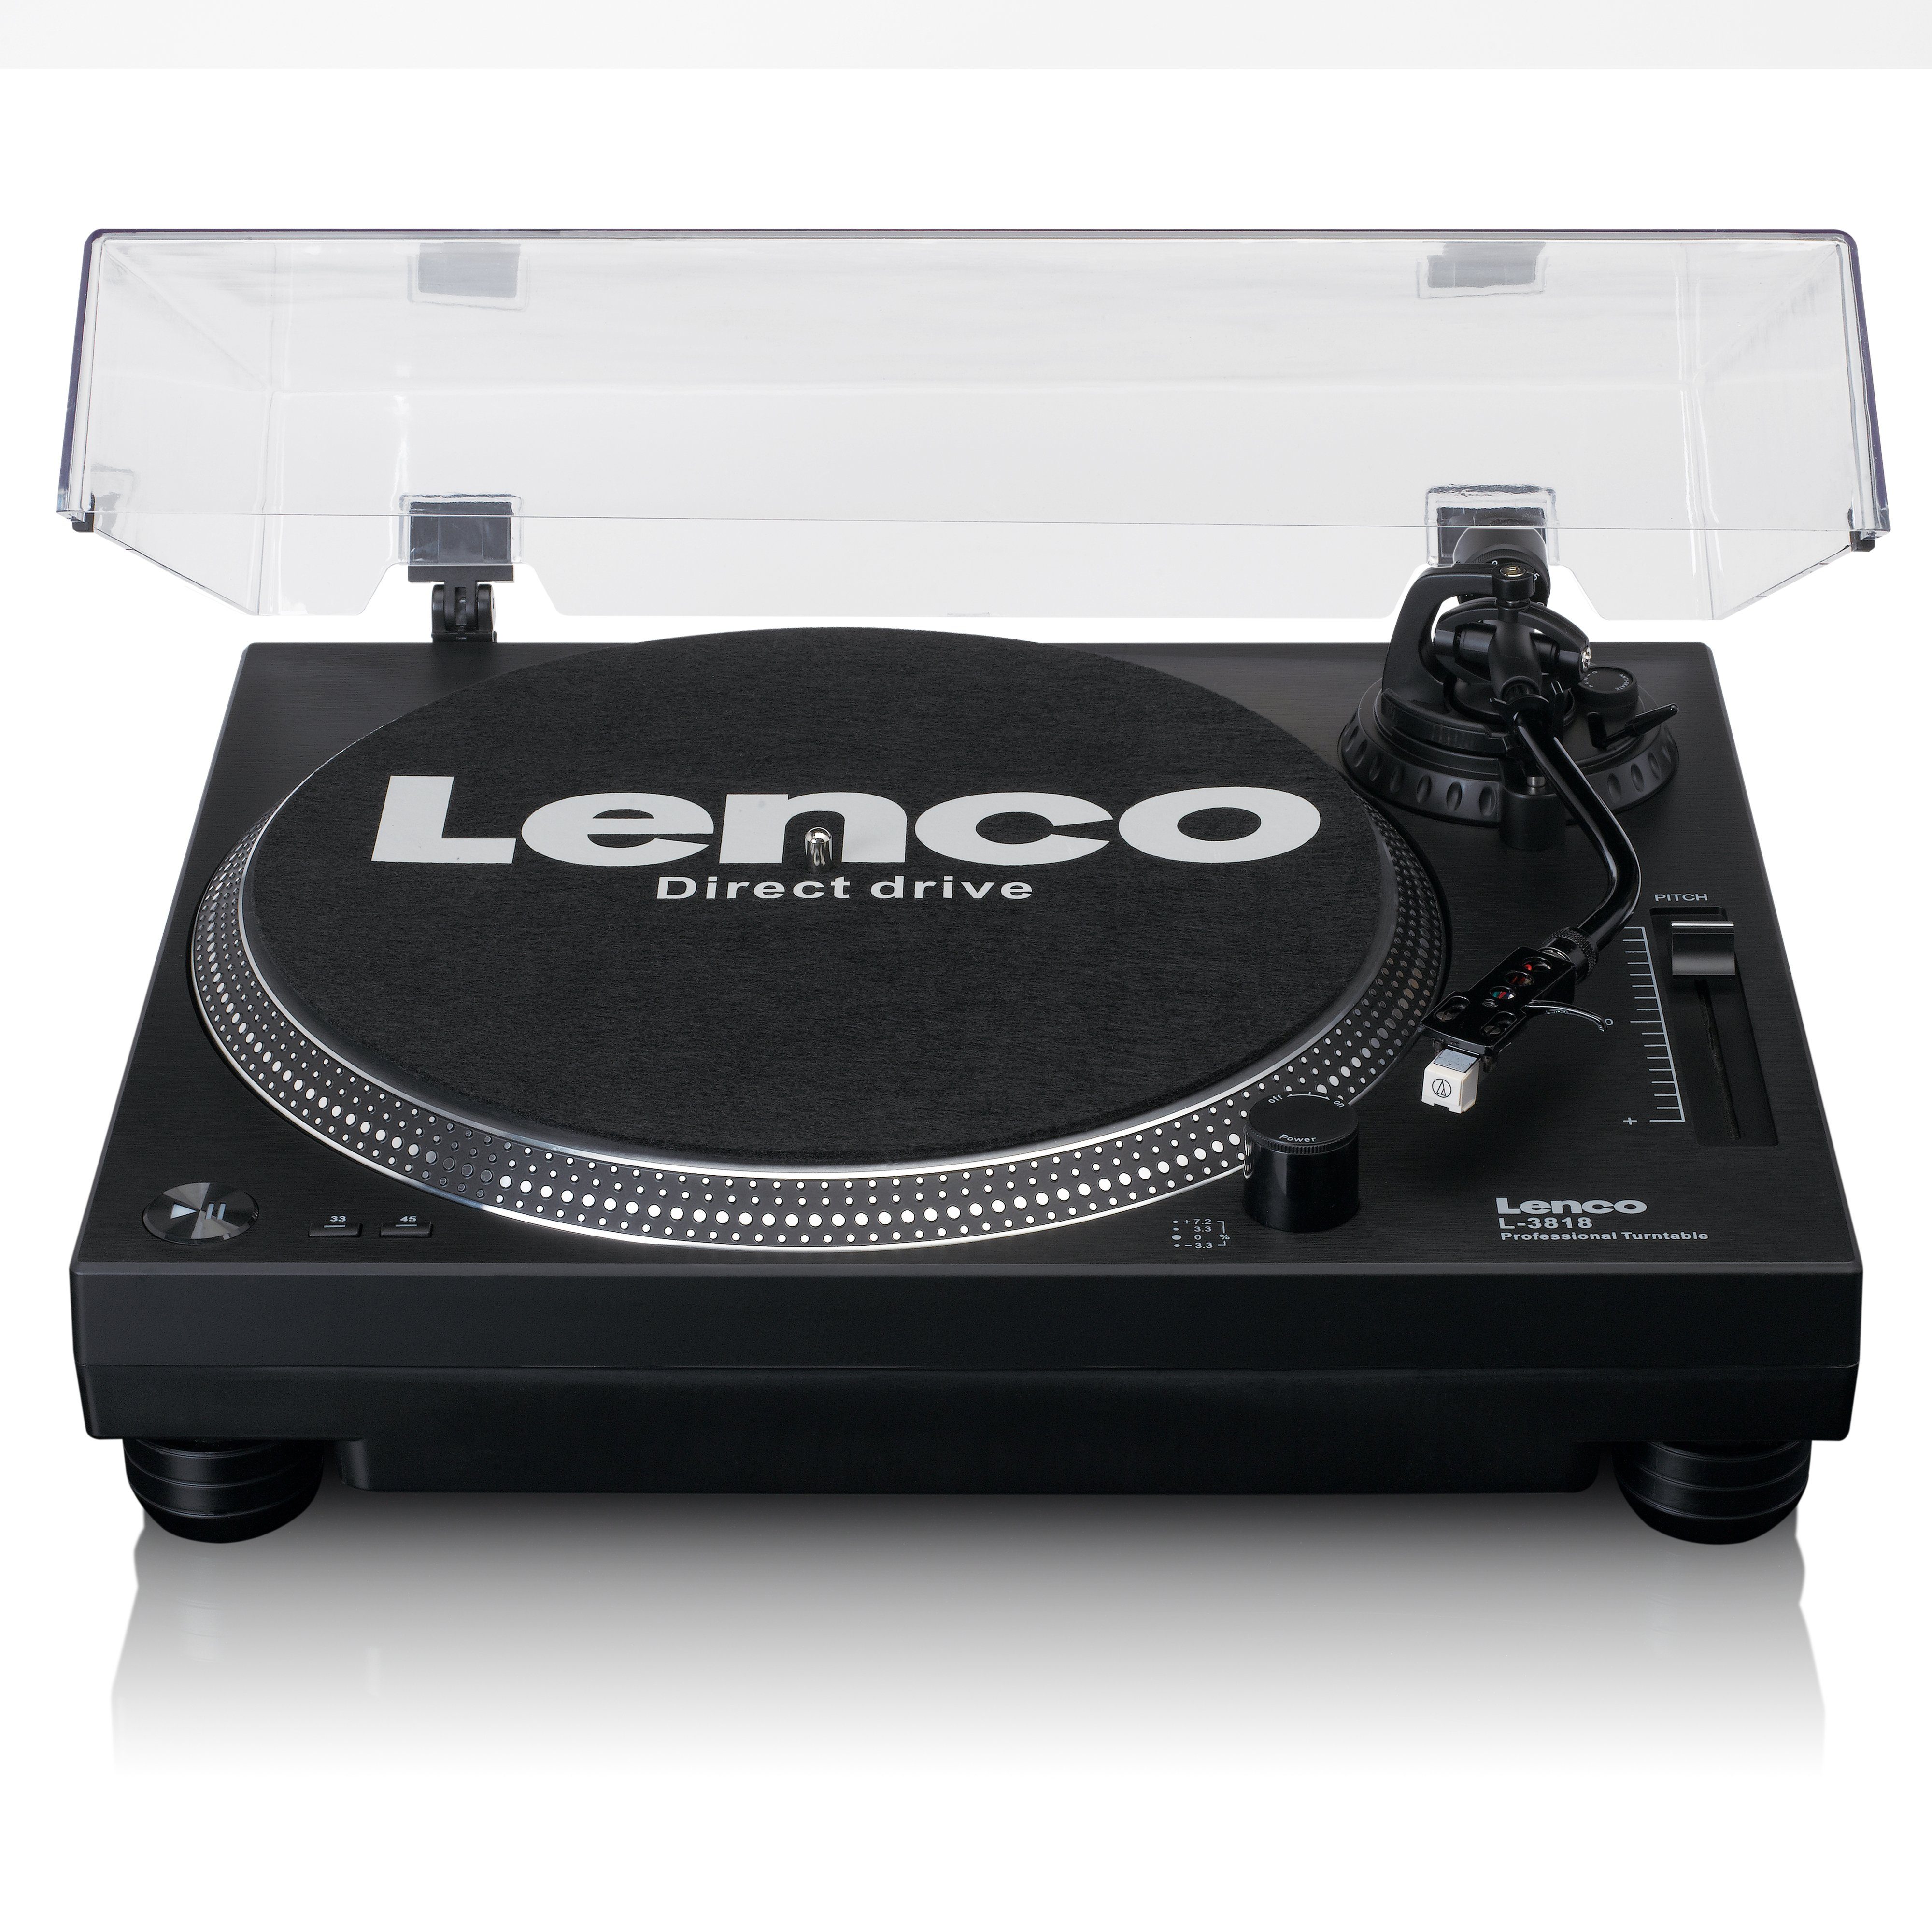 Lenco L-3818BK Plattenspieler (Direct drive), Plattenspieler mit  Direktantrieb USB-Aufnahme